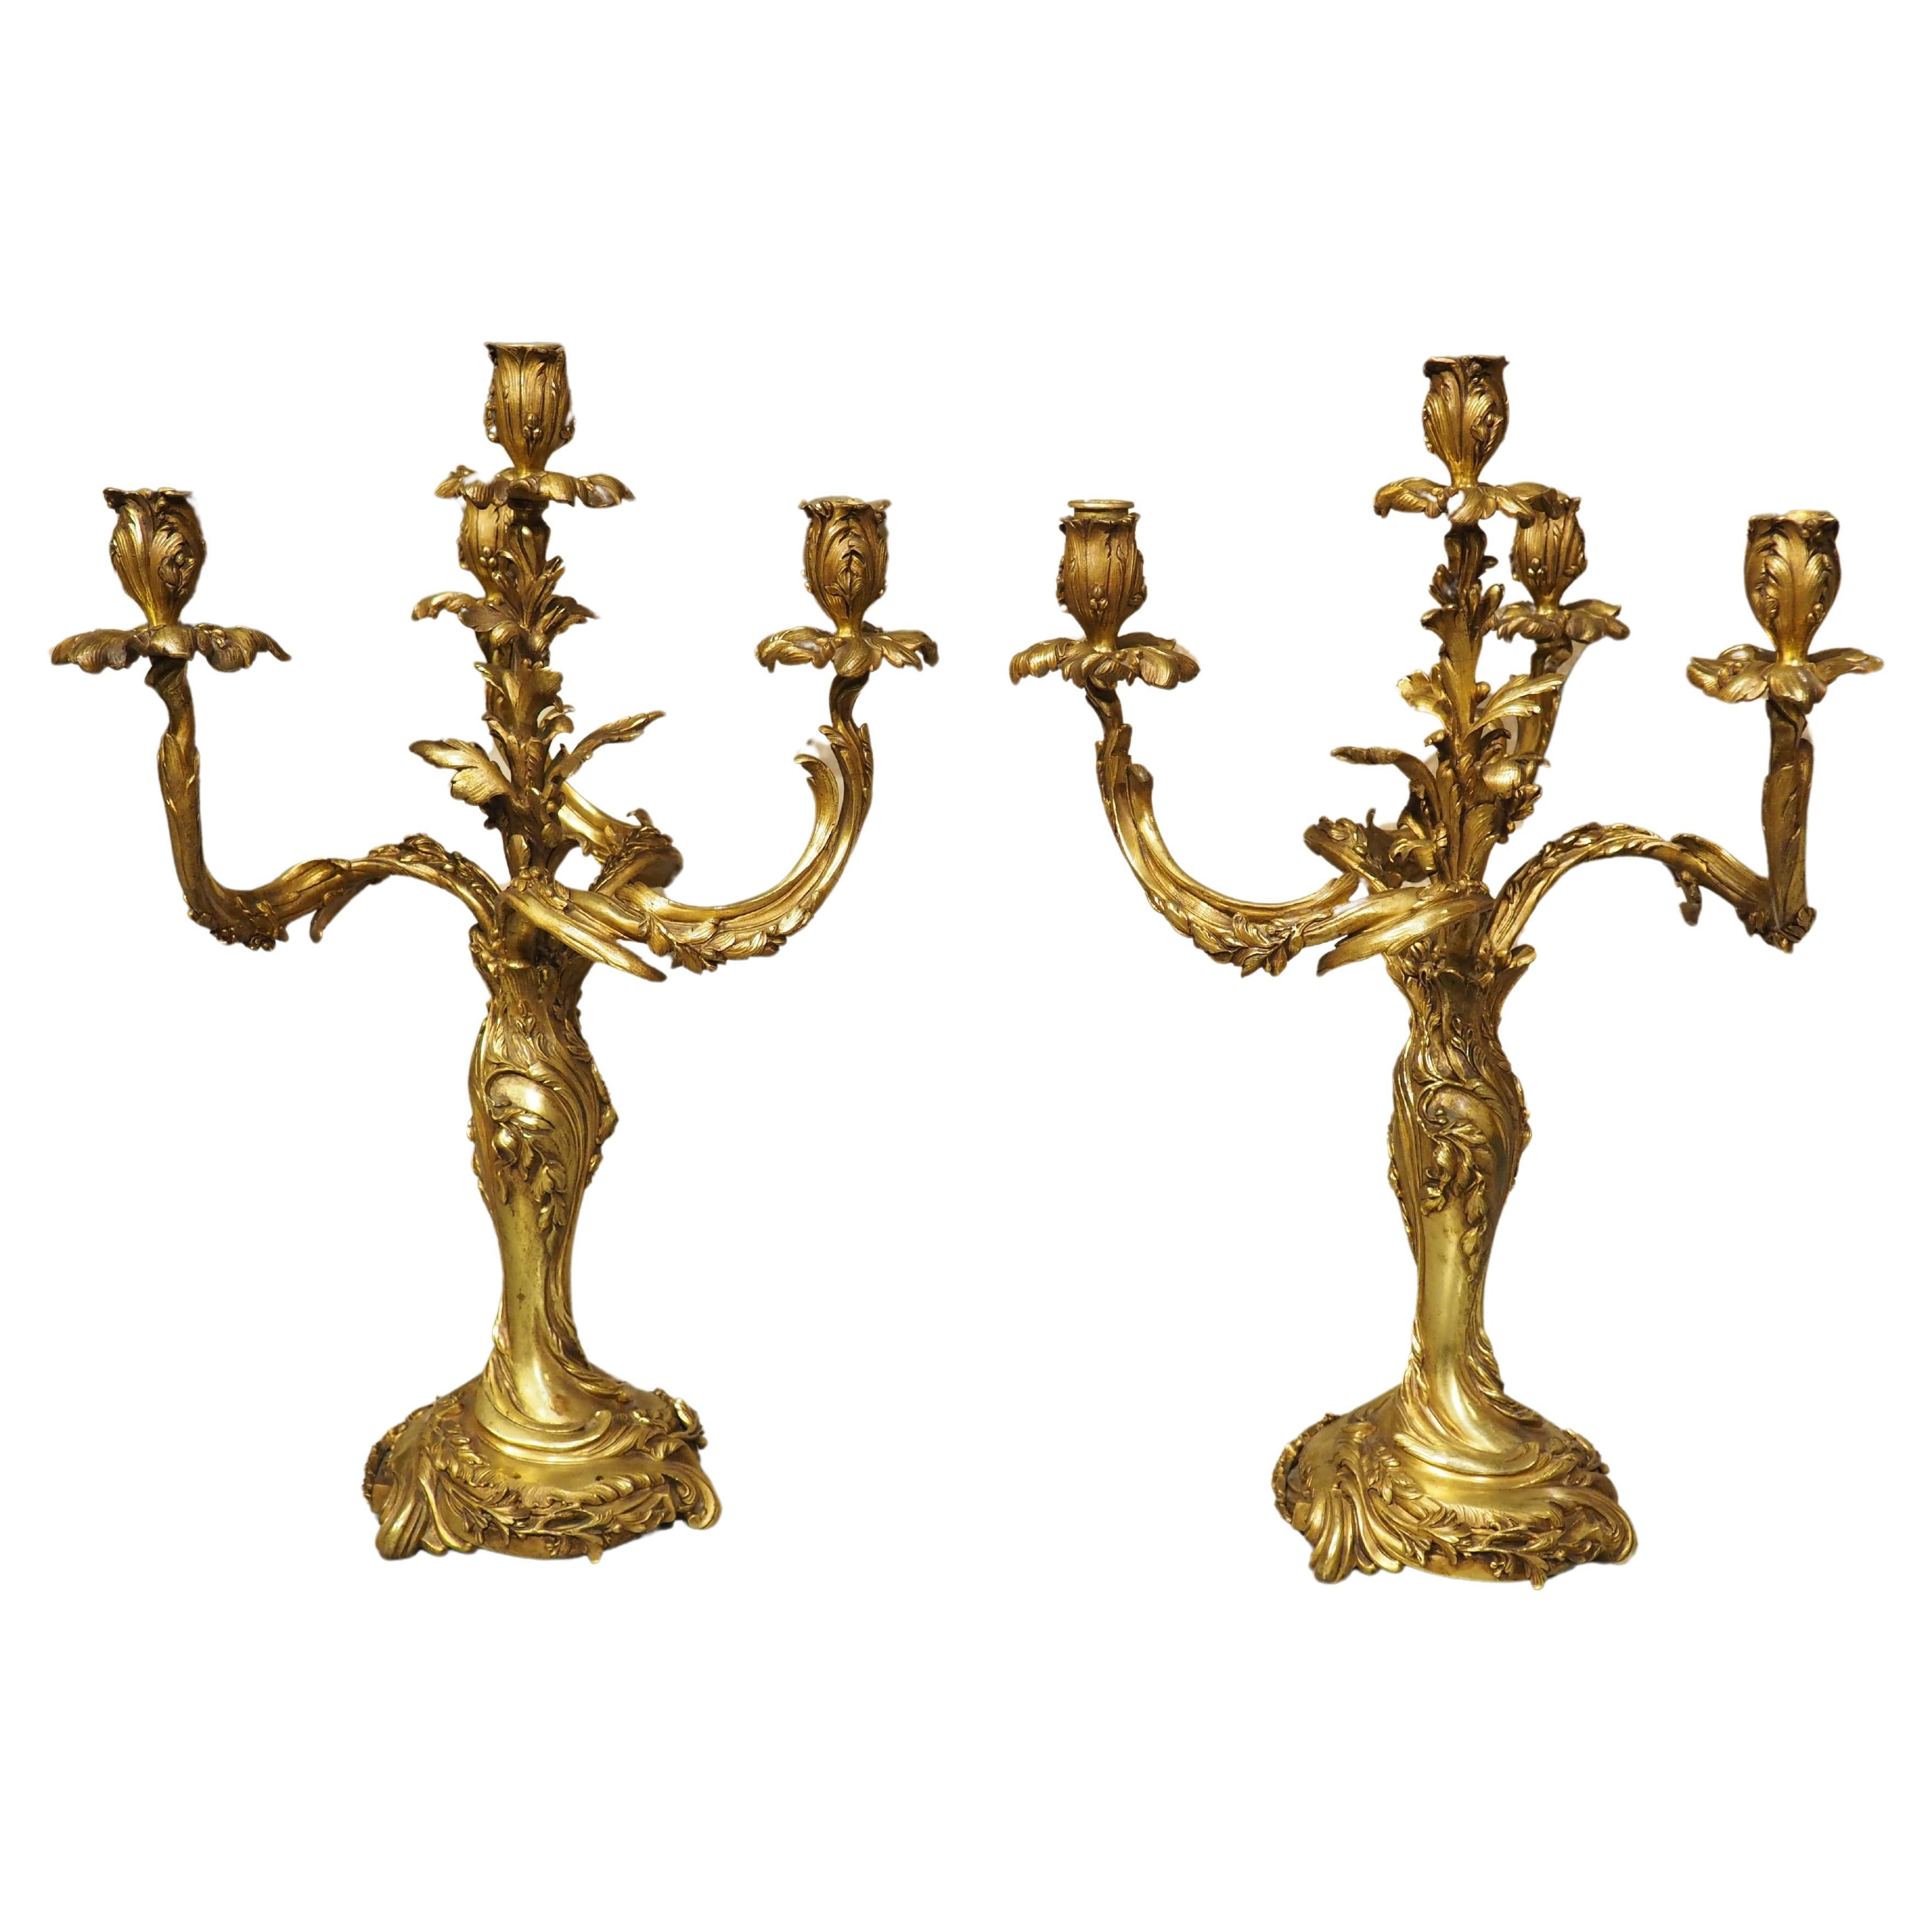 Pair of Belgian Gilt Bronze Candelabras by Georges Van de Voorde (1878-1970)